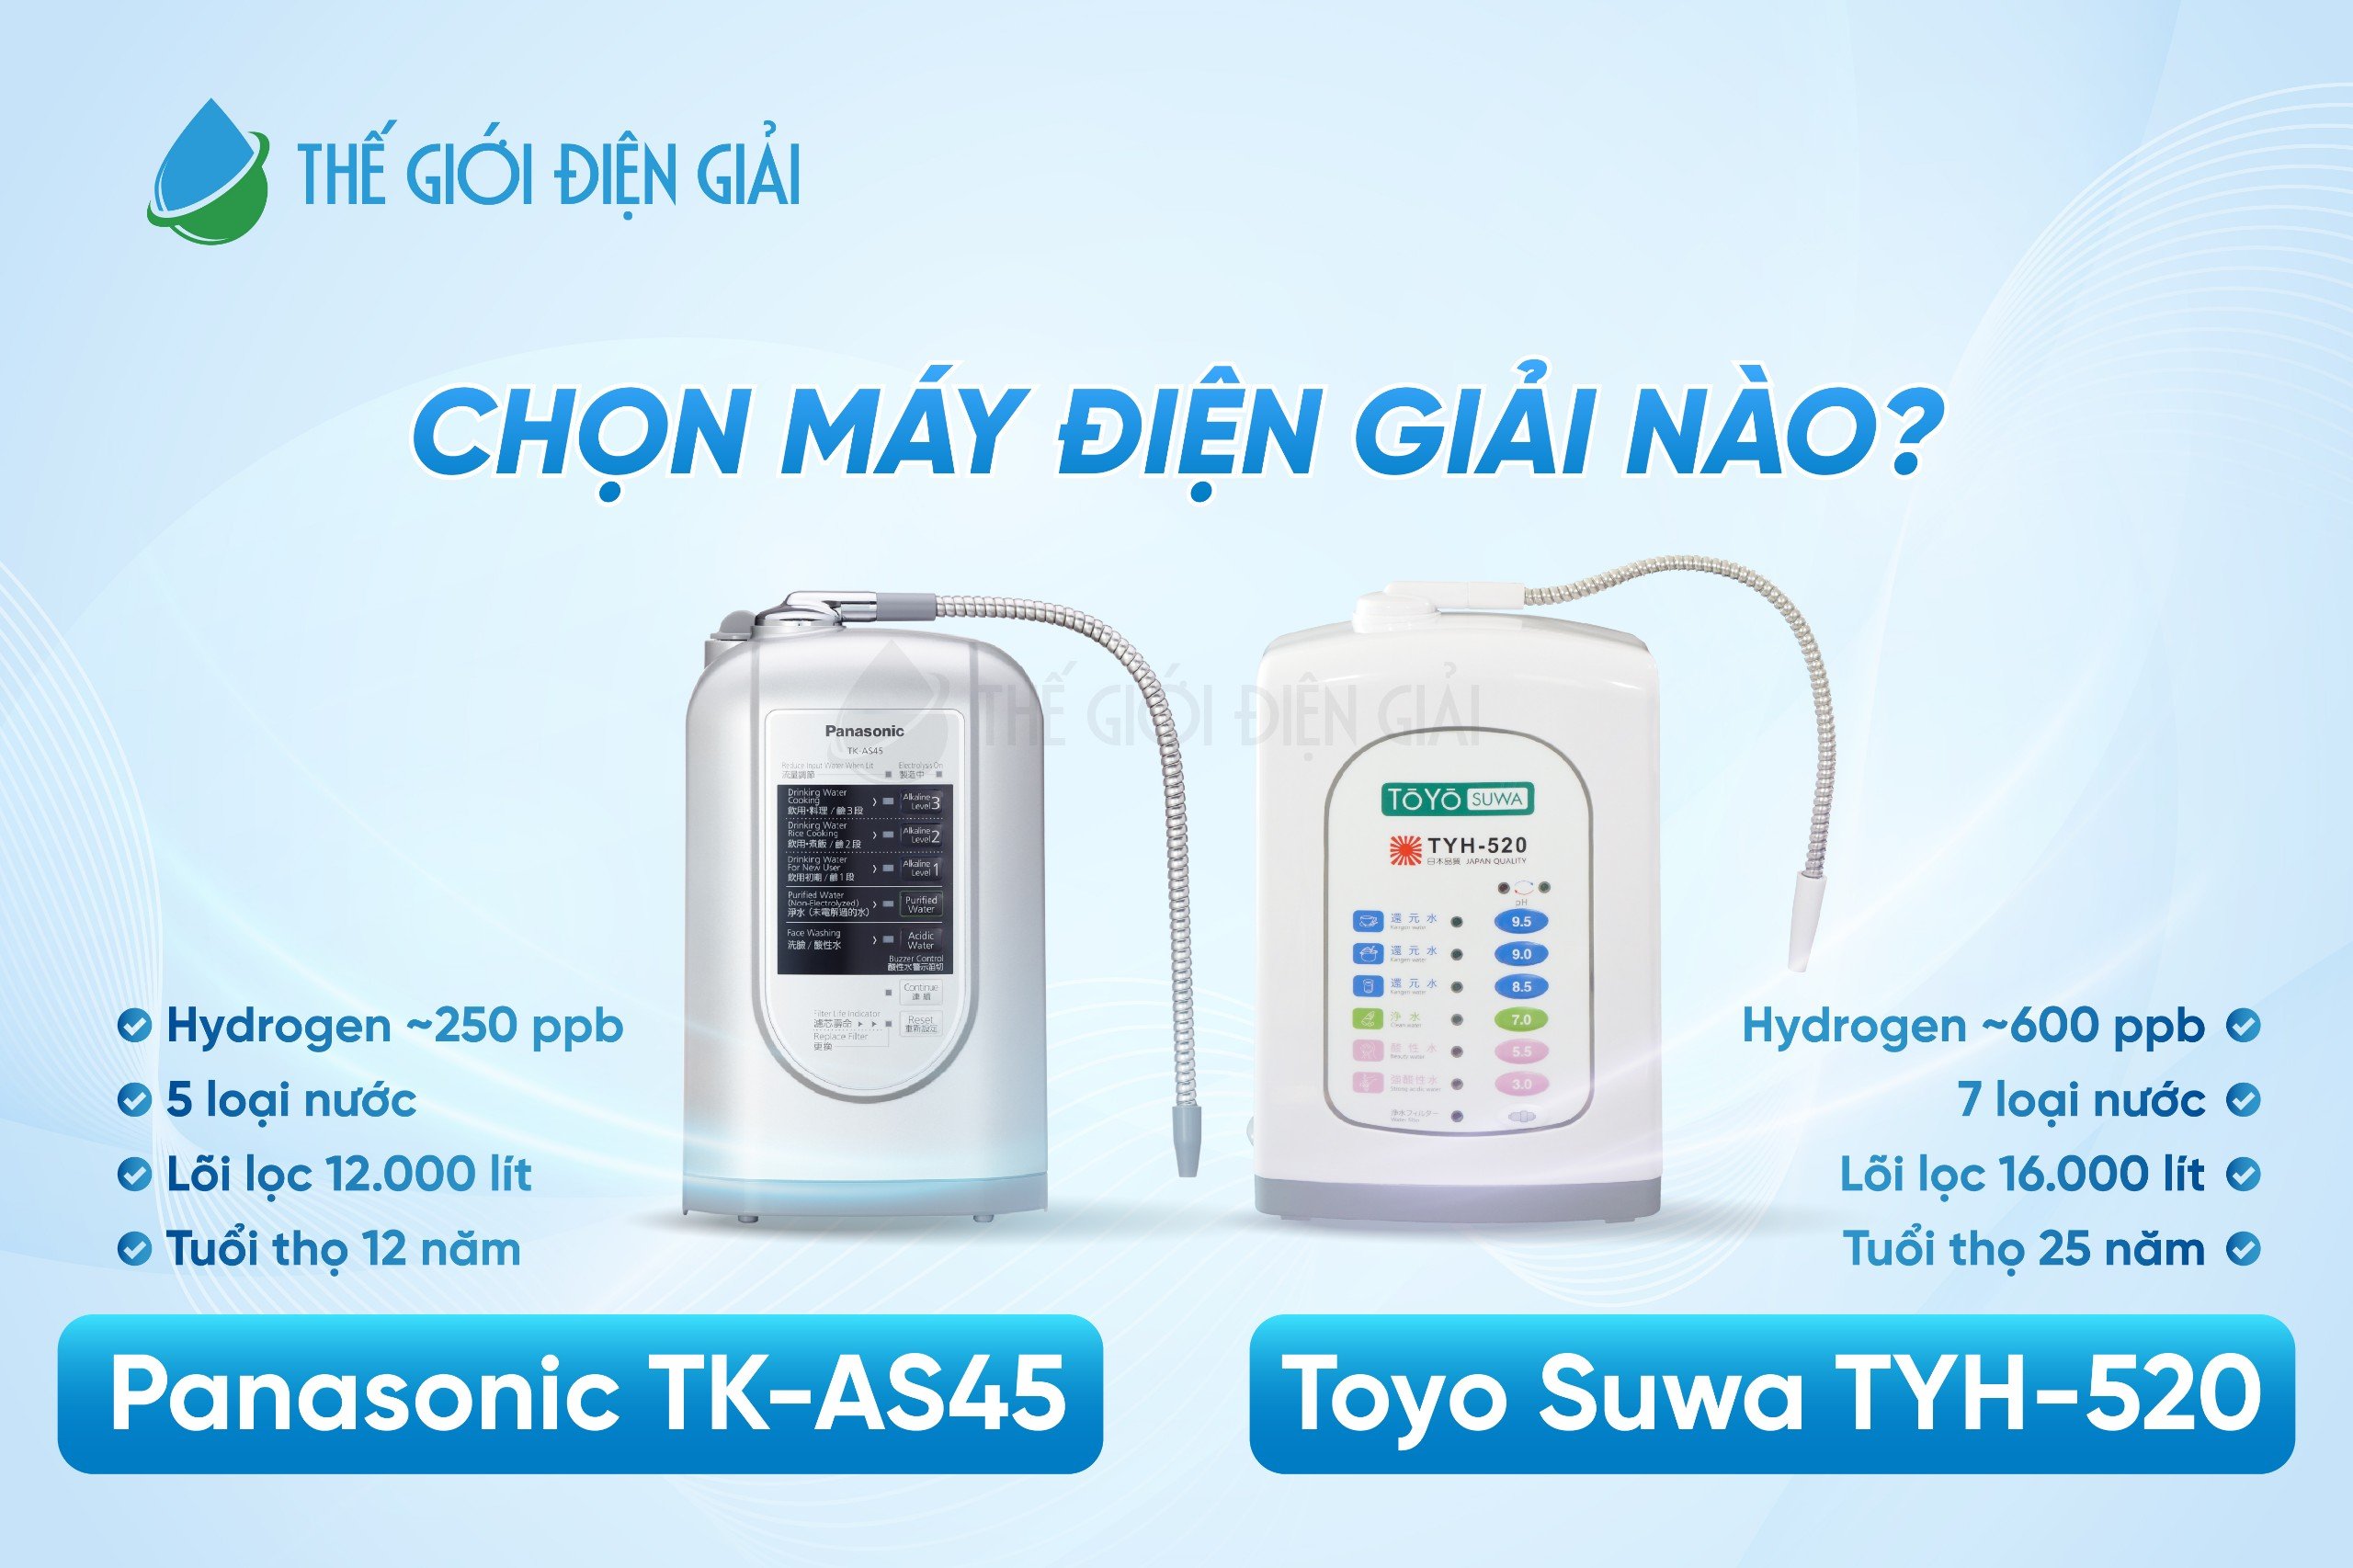 Chọn máy điện giải nào? Panasonic TK-AS45 hay Toyo Suwa TYH-520